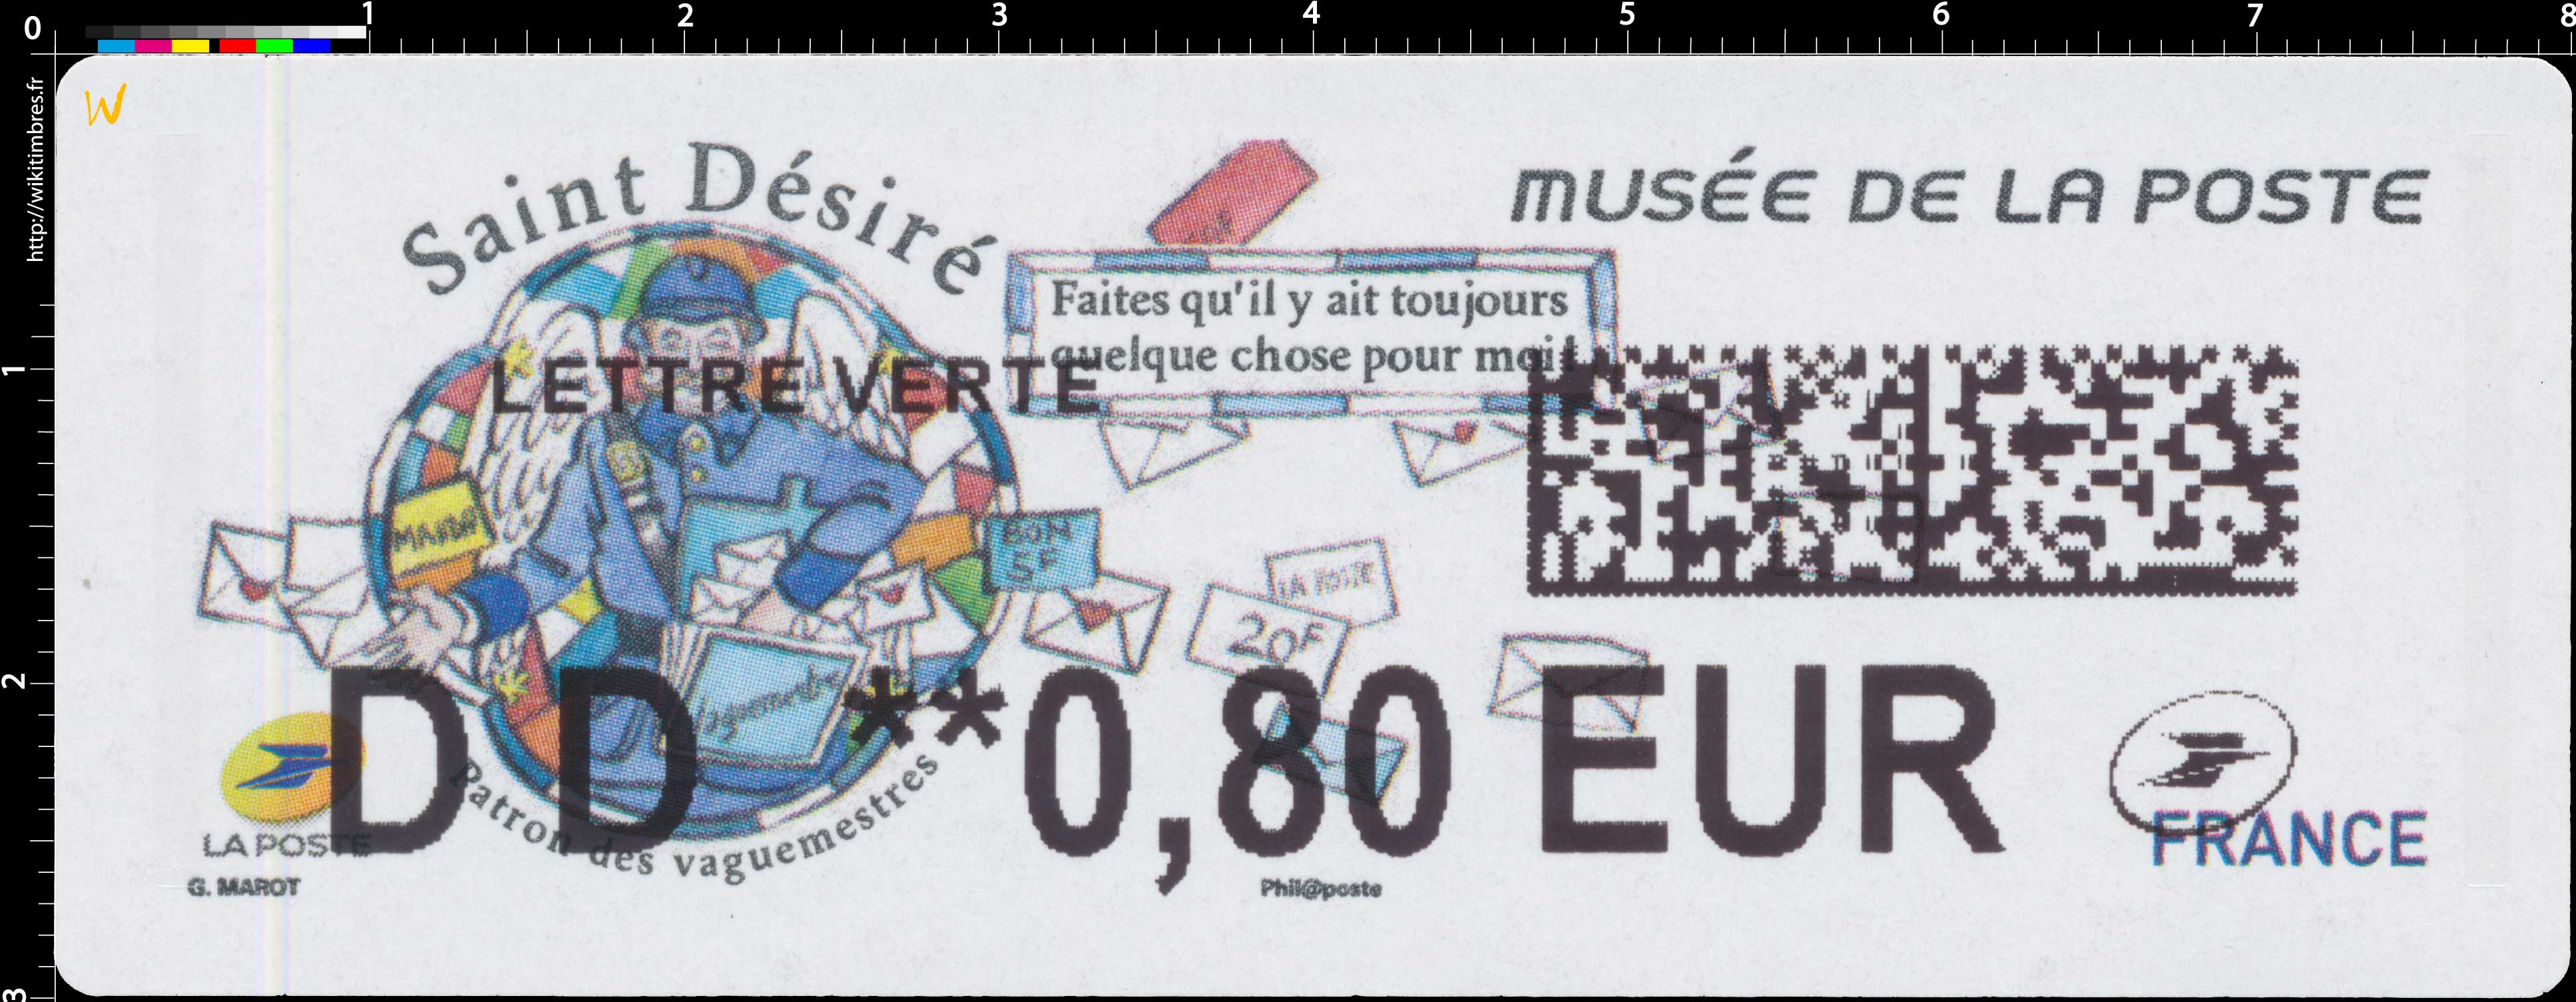 2018 Musée de la Poste - Saint Désiré - Patron des vaguemestres